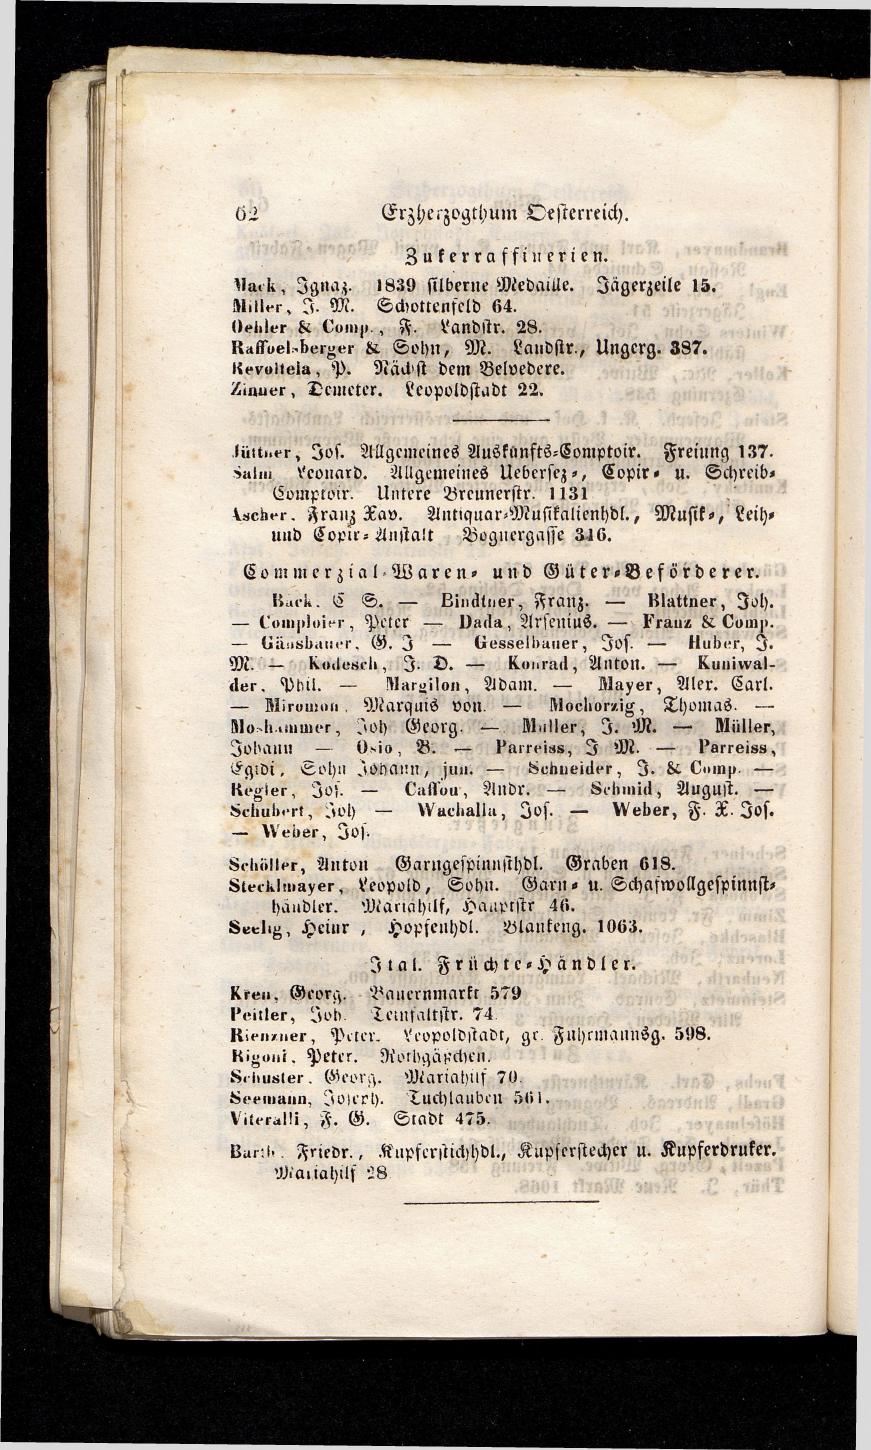 Grosses Adressbuch der Kaufleute. No. 13. Oesterreich ober u. unter der Enns 1844 - Seite 66